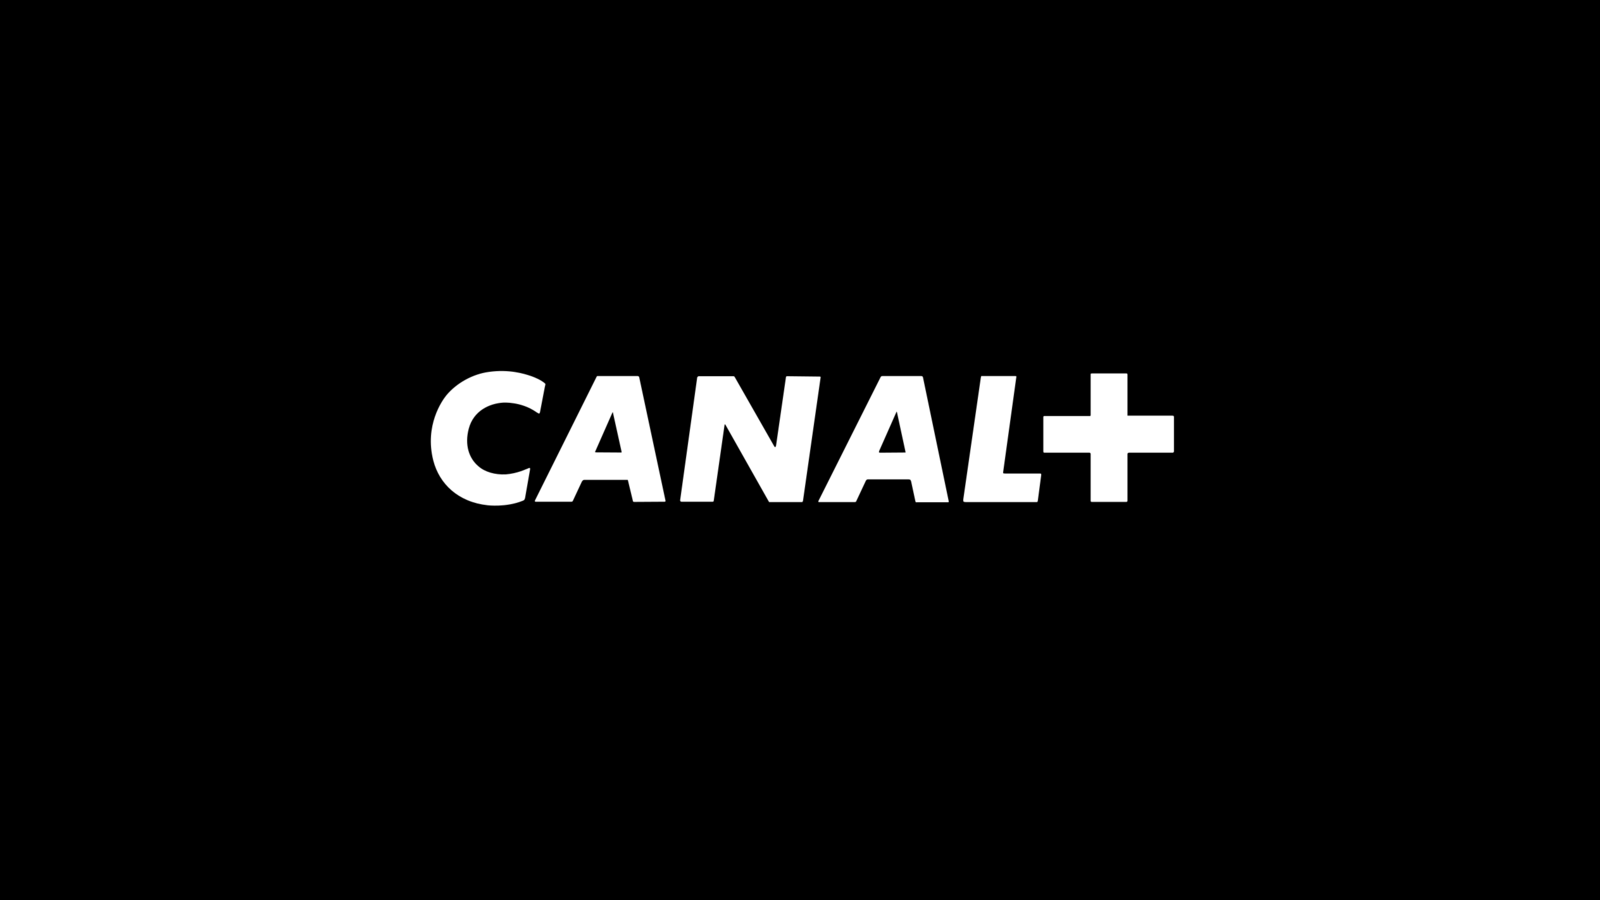 Pour mieux lutter face aux plateformes streaming, Canal+ veut séparer sa section films et séries du sport